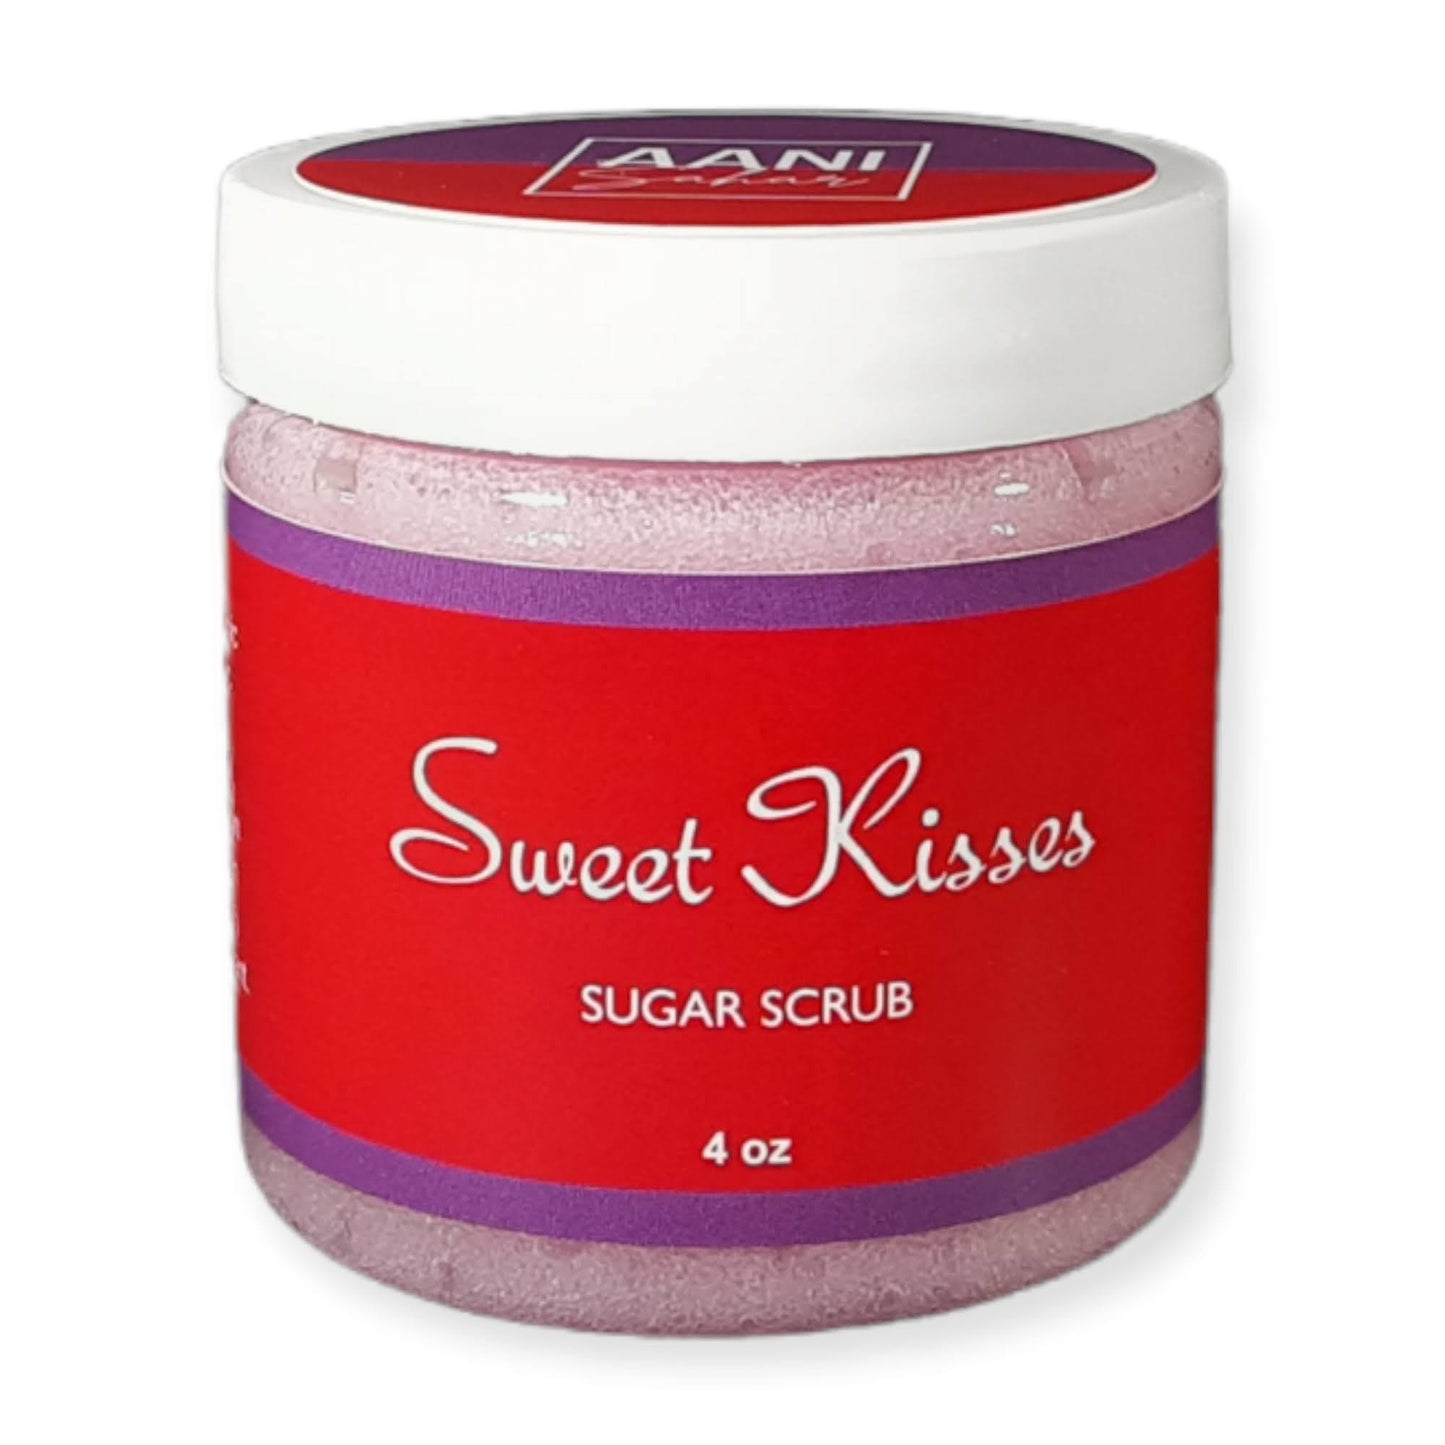 Sweet Kisses Sugar Scrub